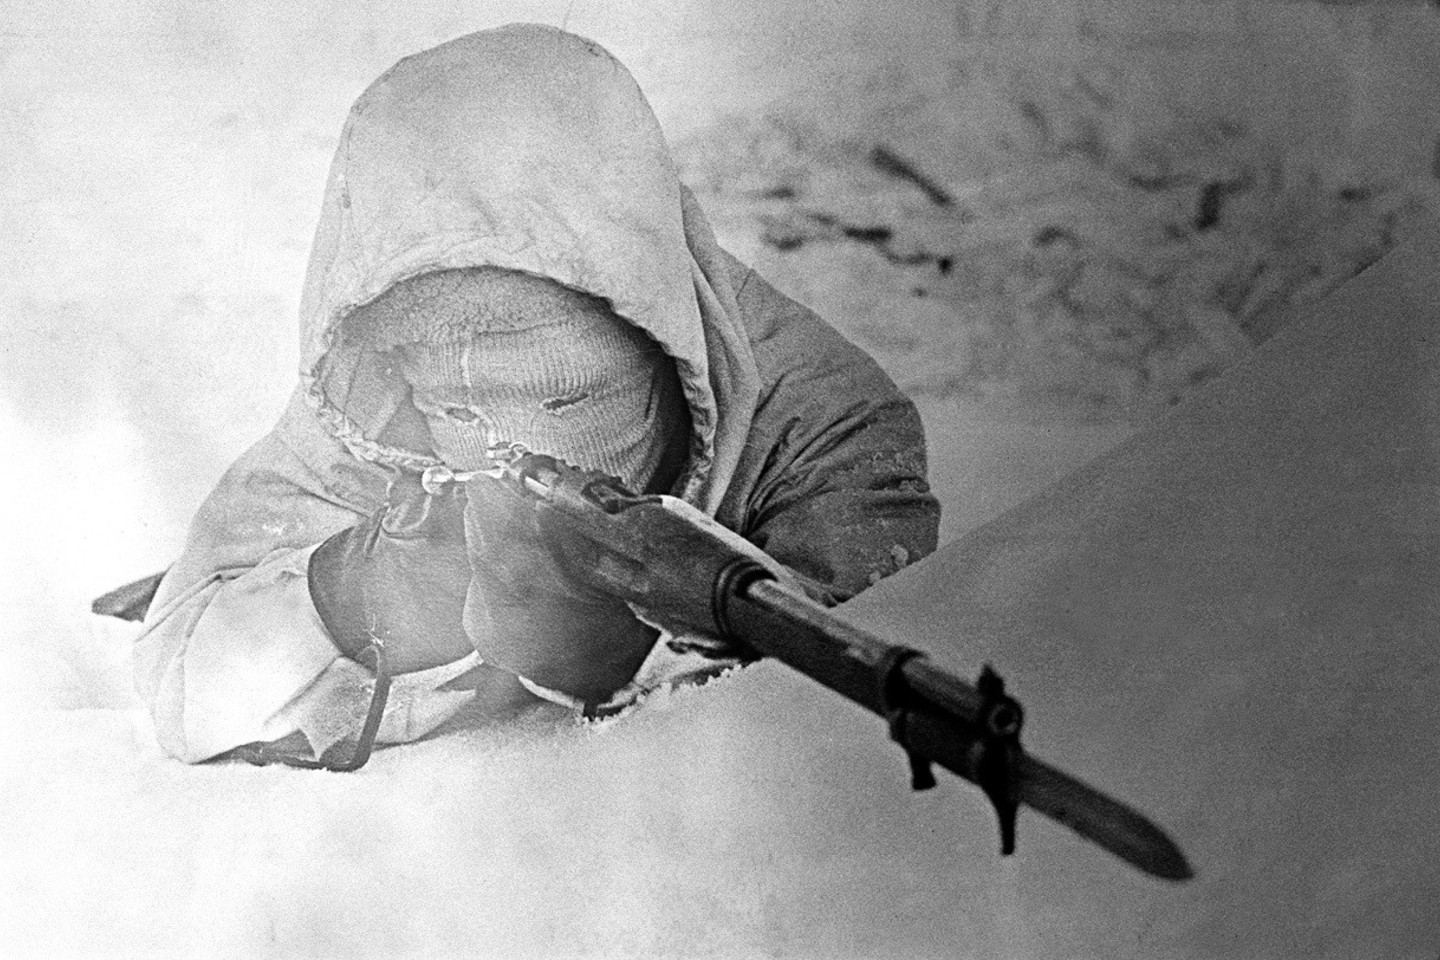 Suomių snaiperiai ne visuomet naudojosi optiniais taikikliais. Stiklo blyksėjimas galėjo išduoti šaulį, be to, snaiperiui taikantis tekdavo kiek aukščiau kilstelti galvą.<br>Knygos iliustracija